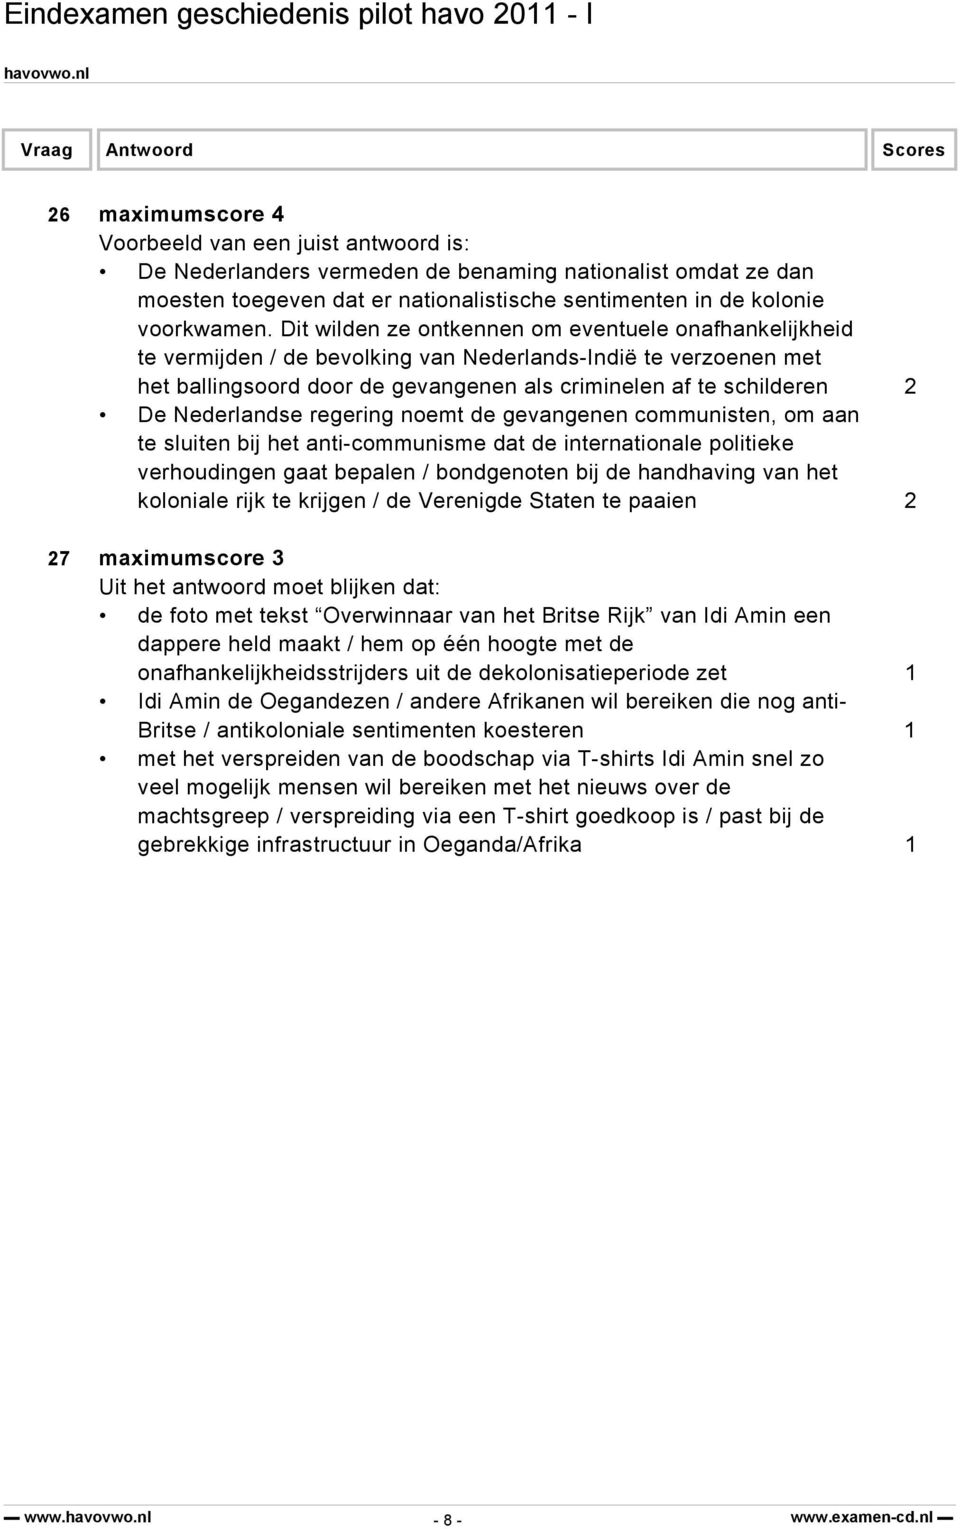 Nederlandse regering noemt de gevangenen communisten, om aan te sluiten bij het anti-communisme dat de internationale politieke verhoudingen gaat bepalen / bondgenoten bij de handhaving van het